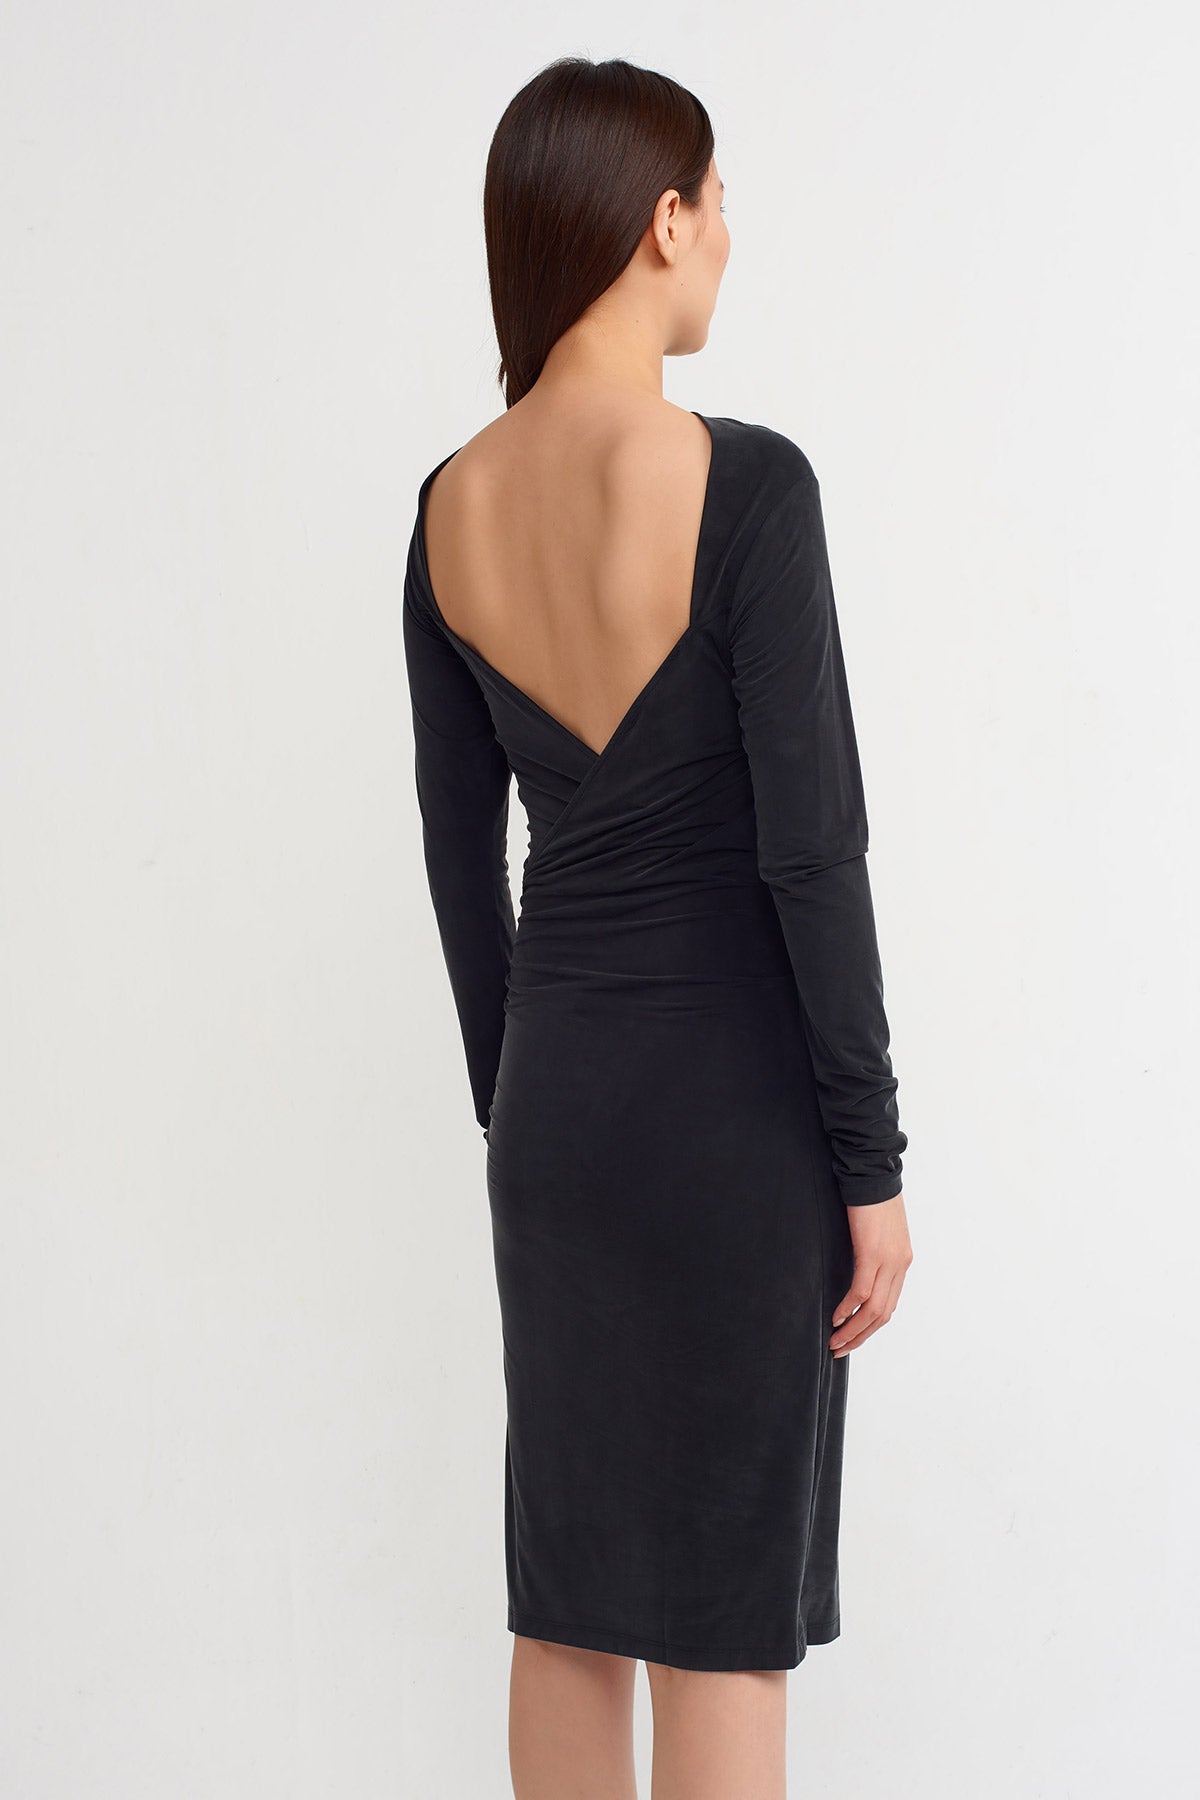 Black Low Back Slim Fit Short Dress-Y234014177